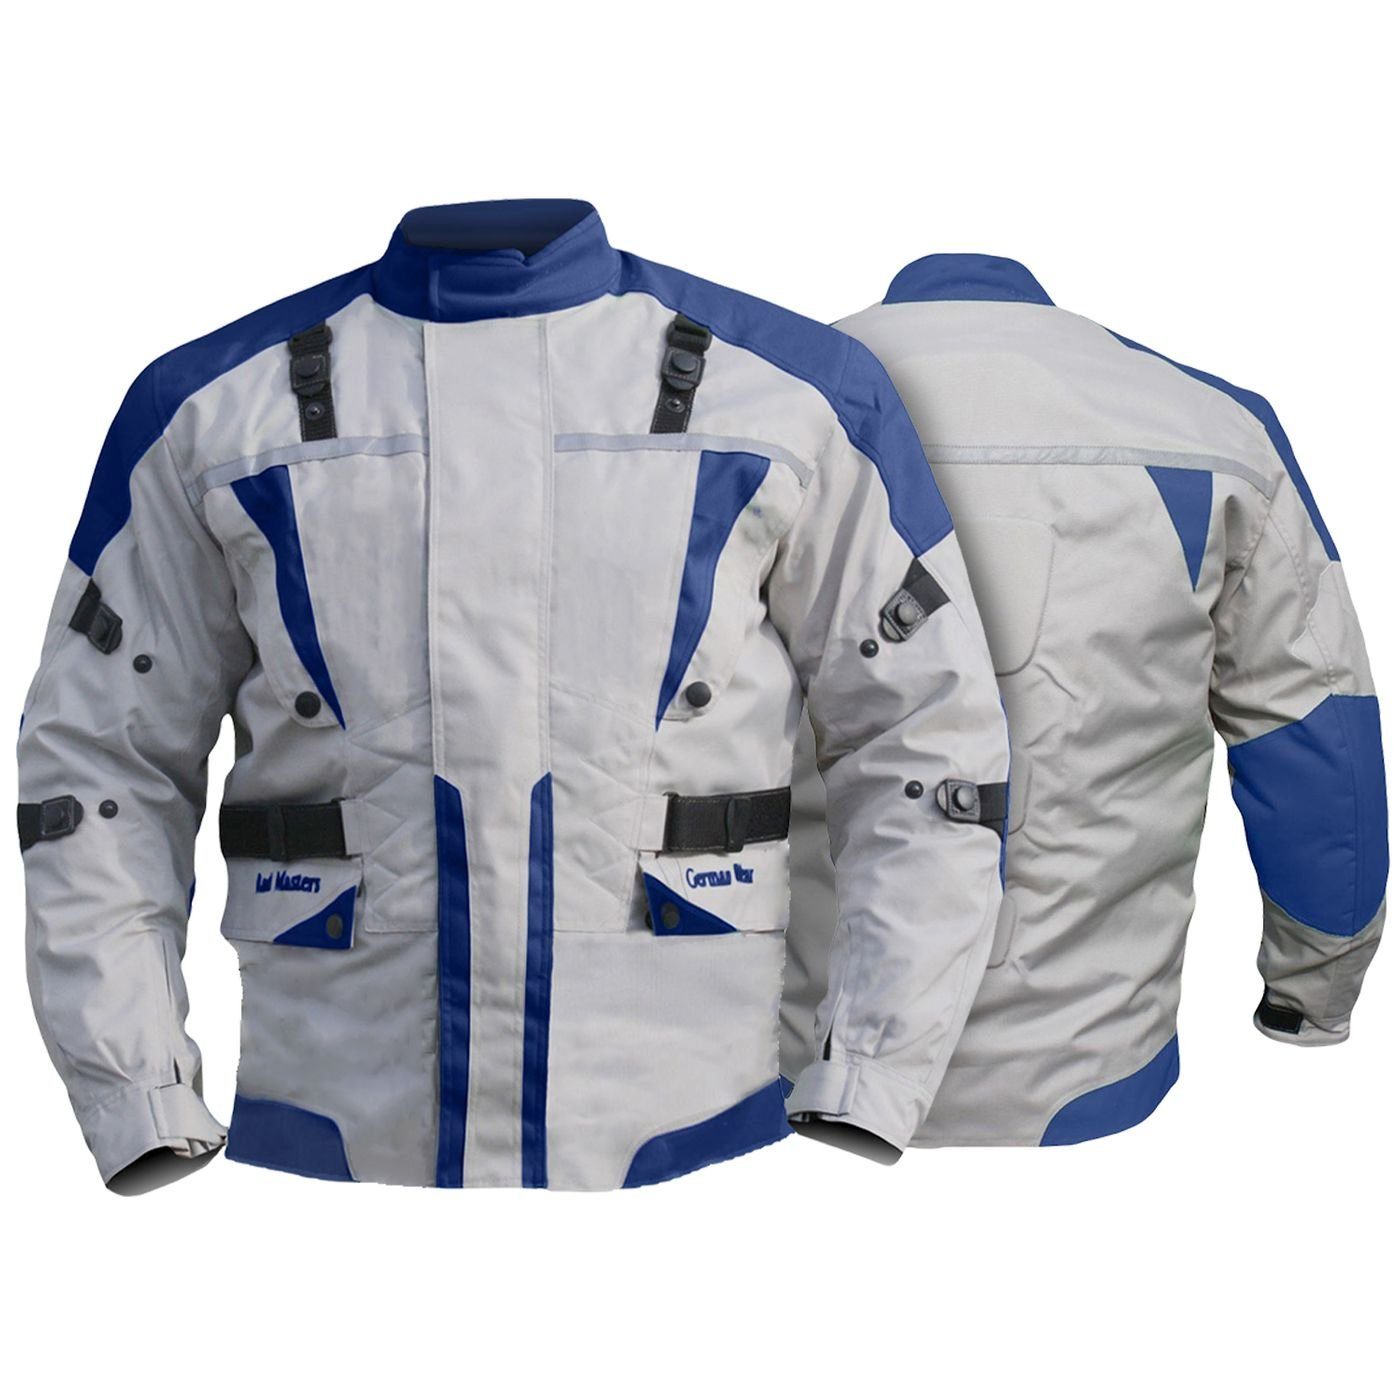 GW309J Motorradjacke Wear Kombigeeignet Textilien Blau jacke German Motorradjacke Jacke